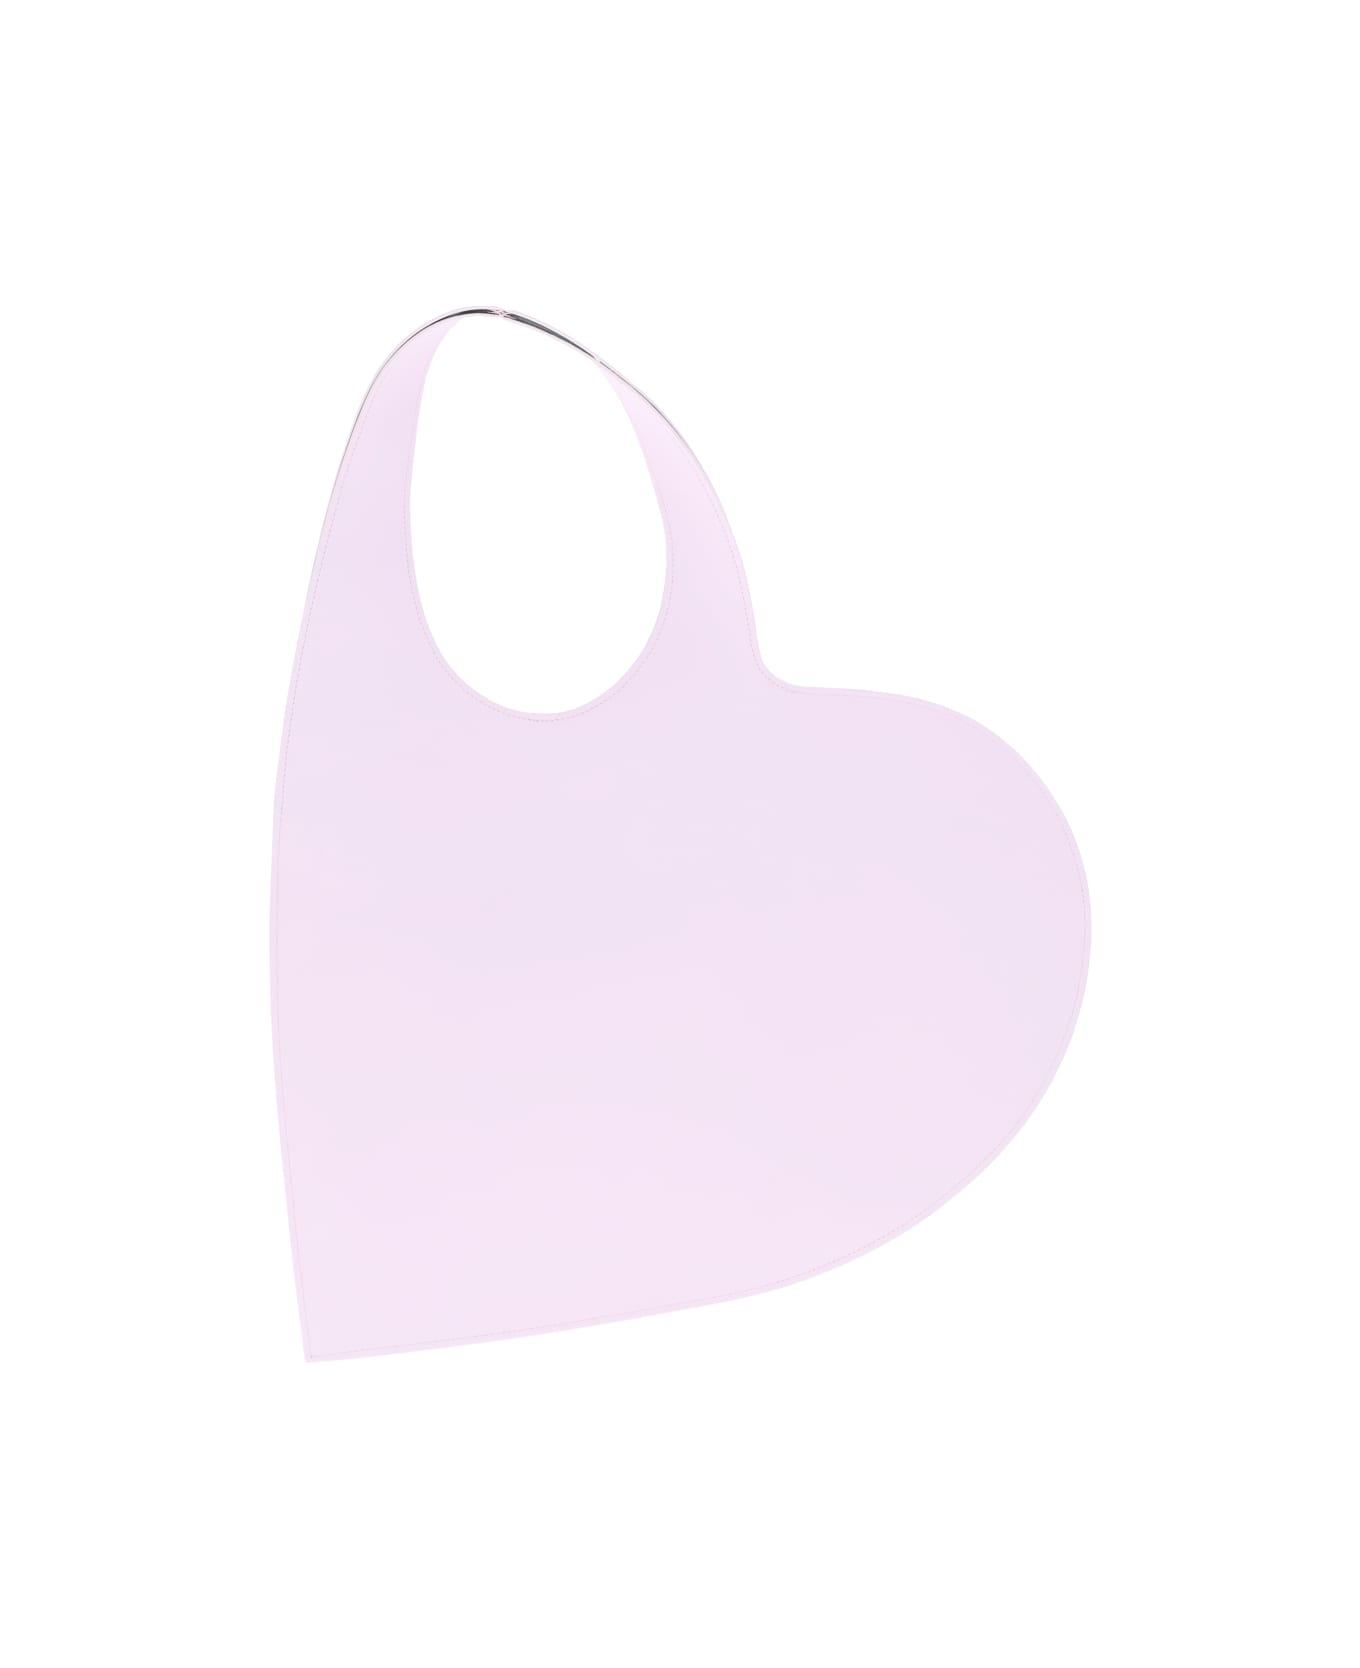 Coperni 'heart' Tote Bag - Pink ショルダーバッグ